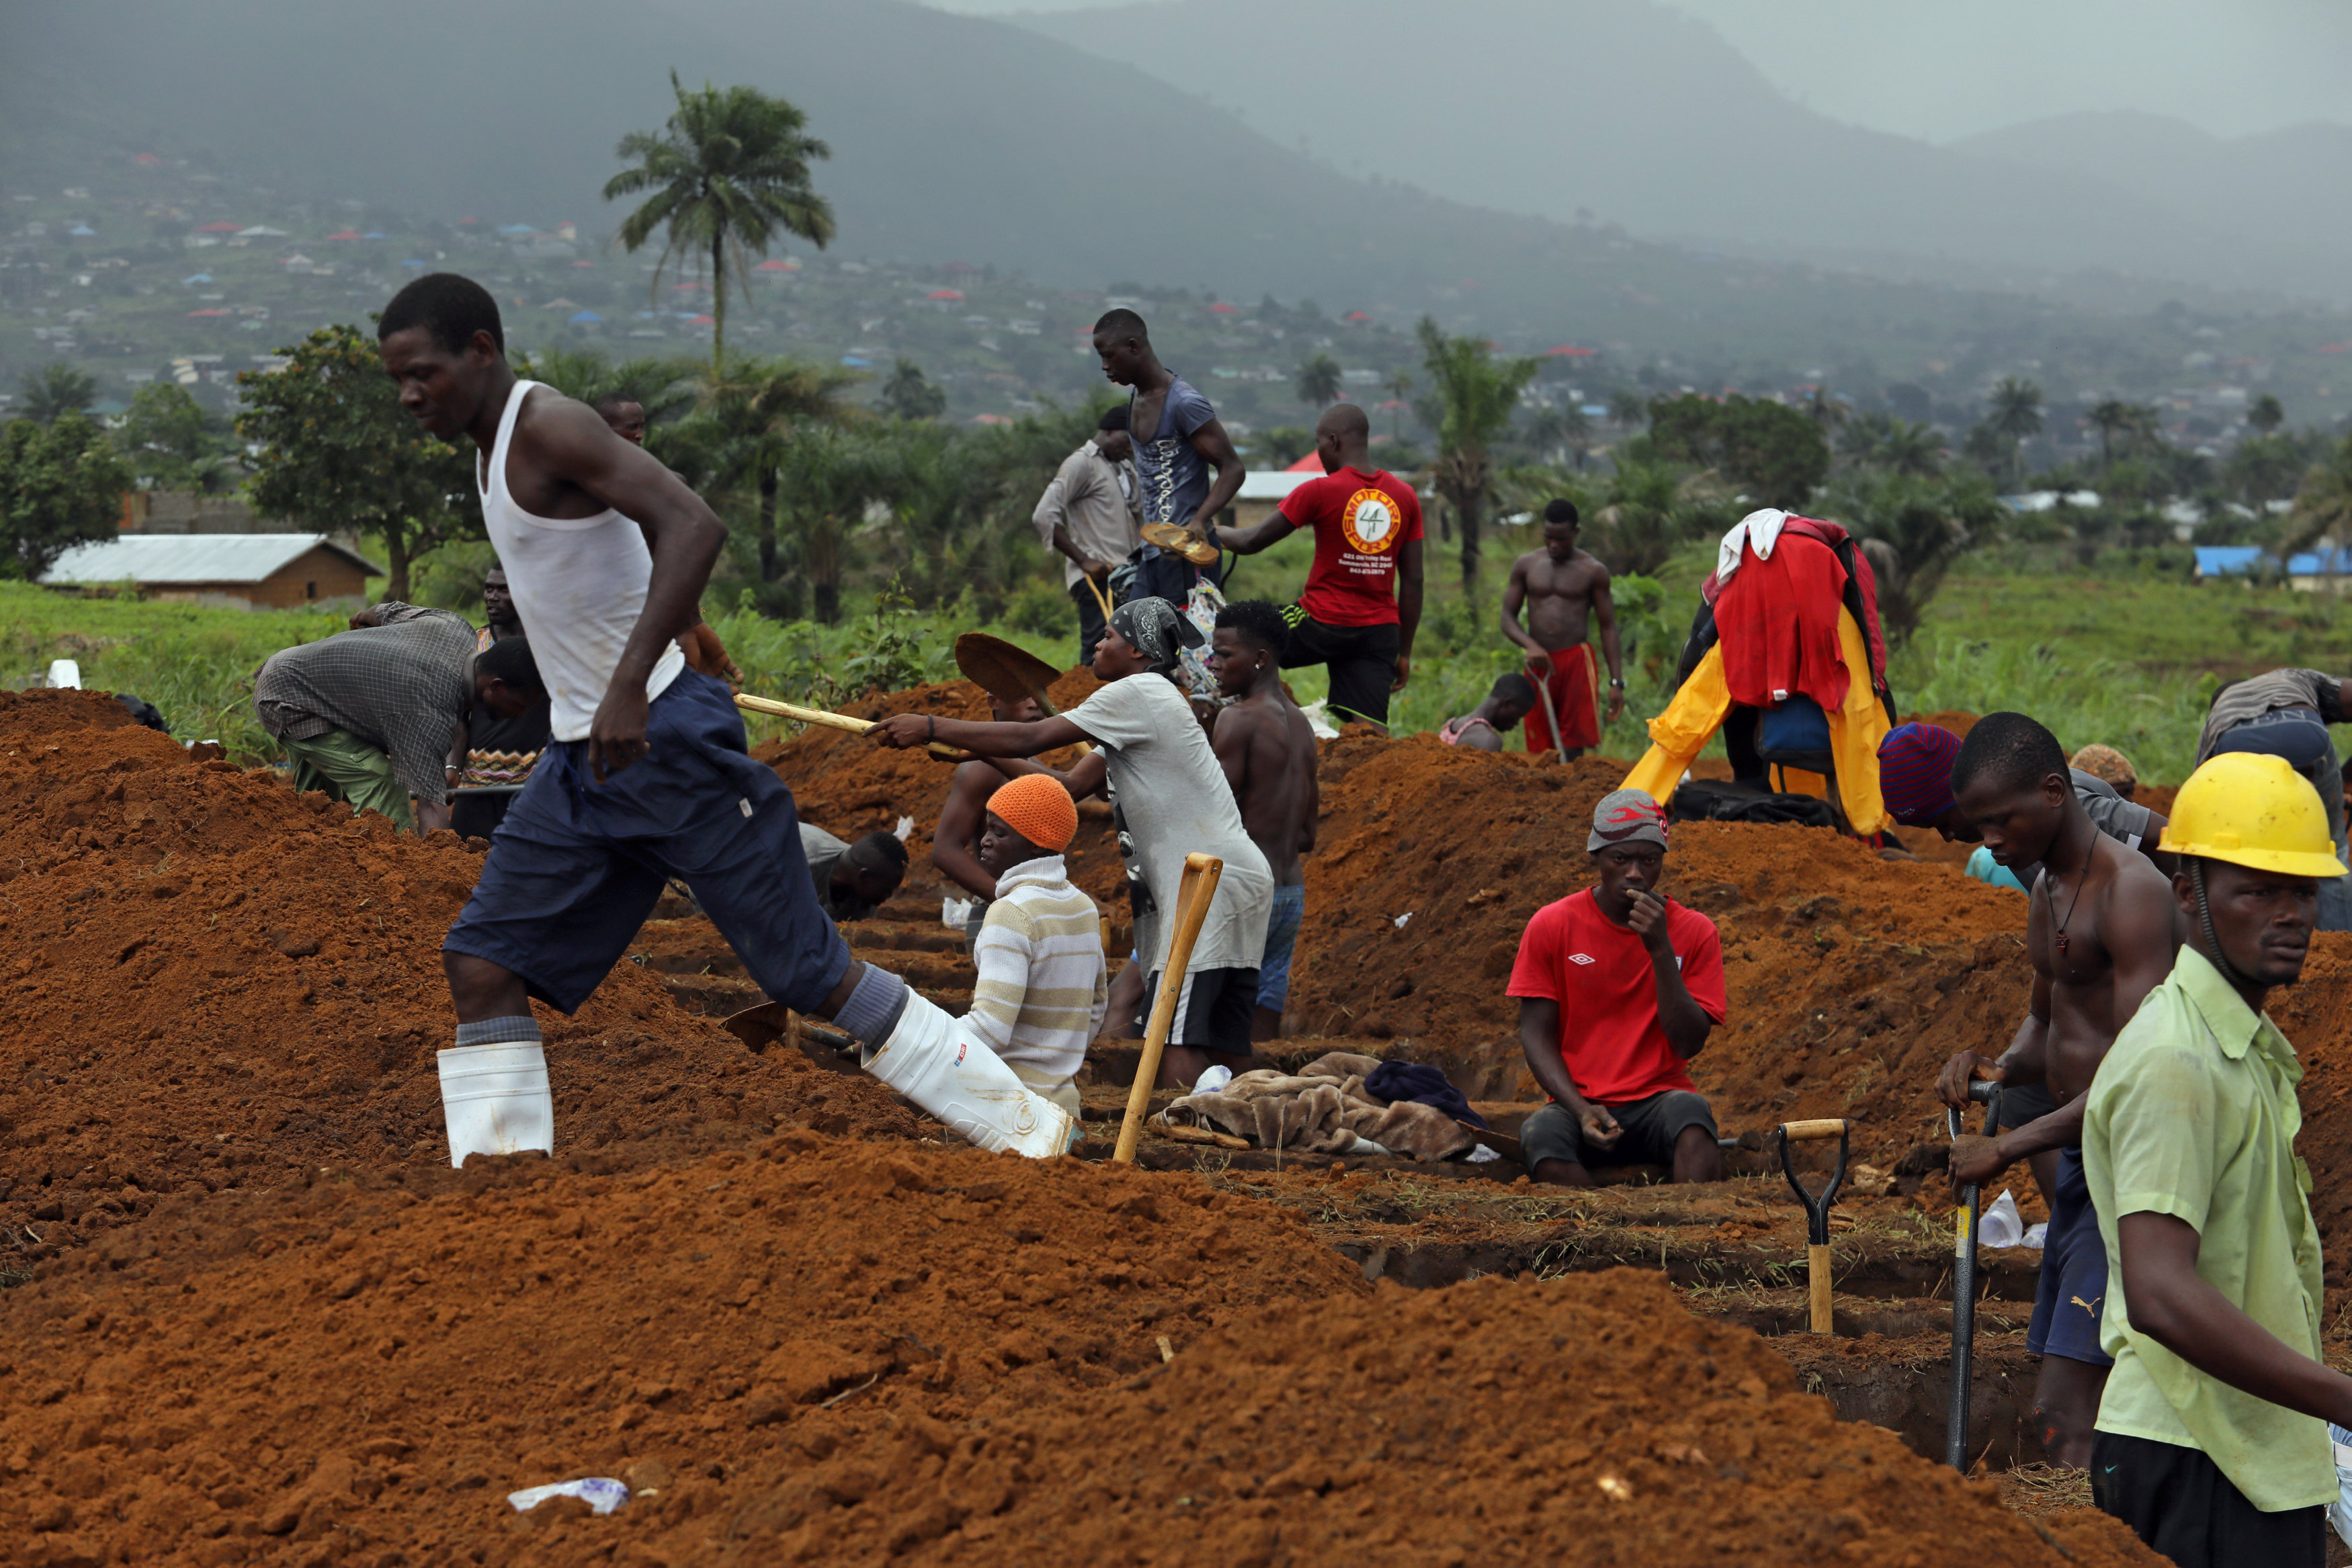 سيراليون تقرر دفن مئات القتلى بمقابر جماعية بعد الفيضانات